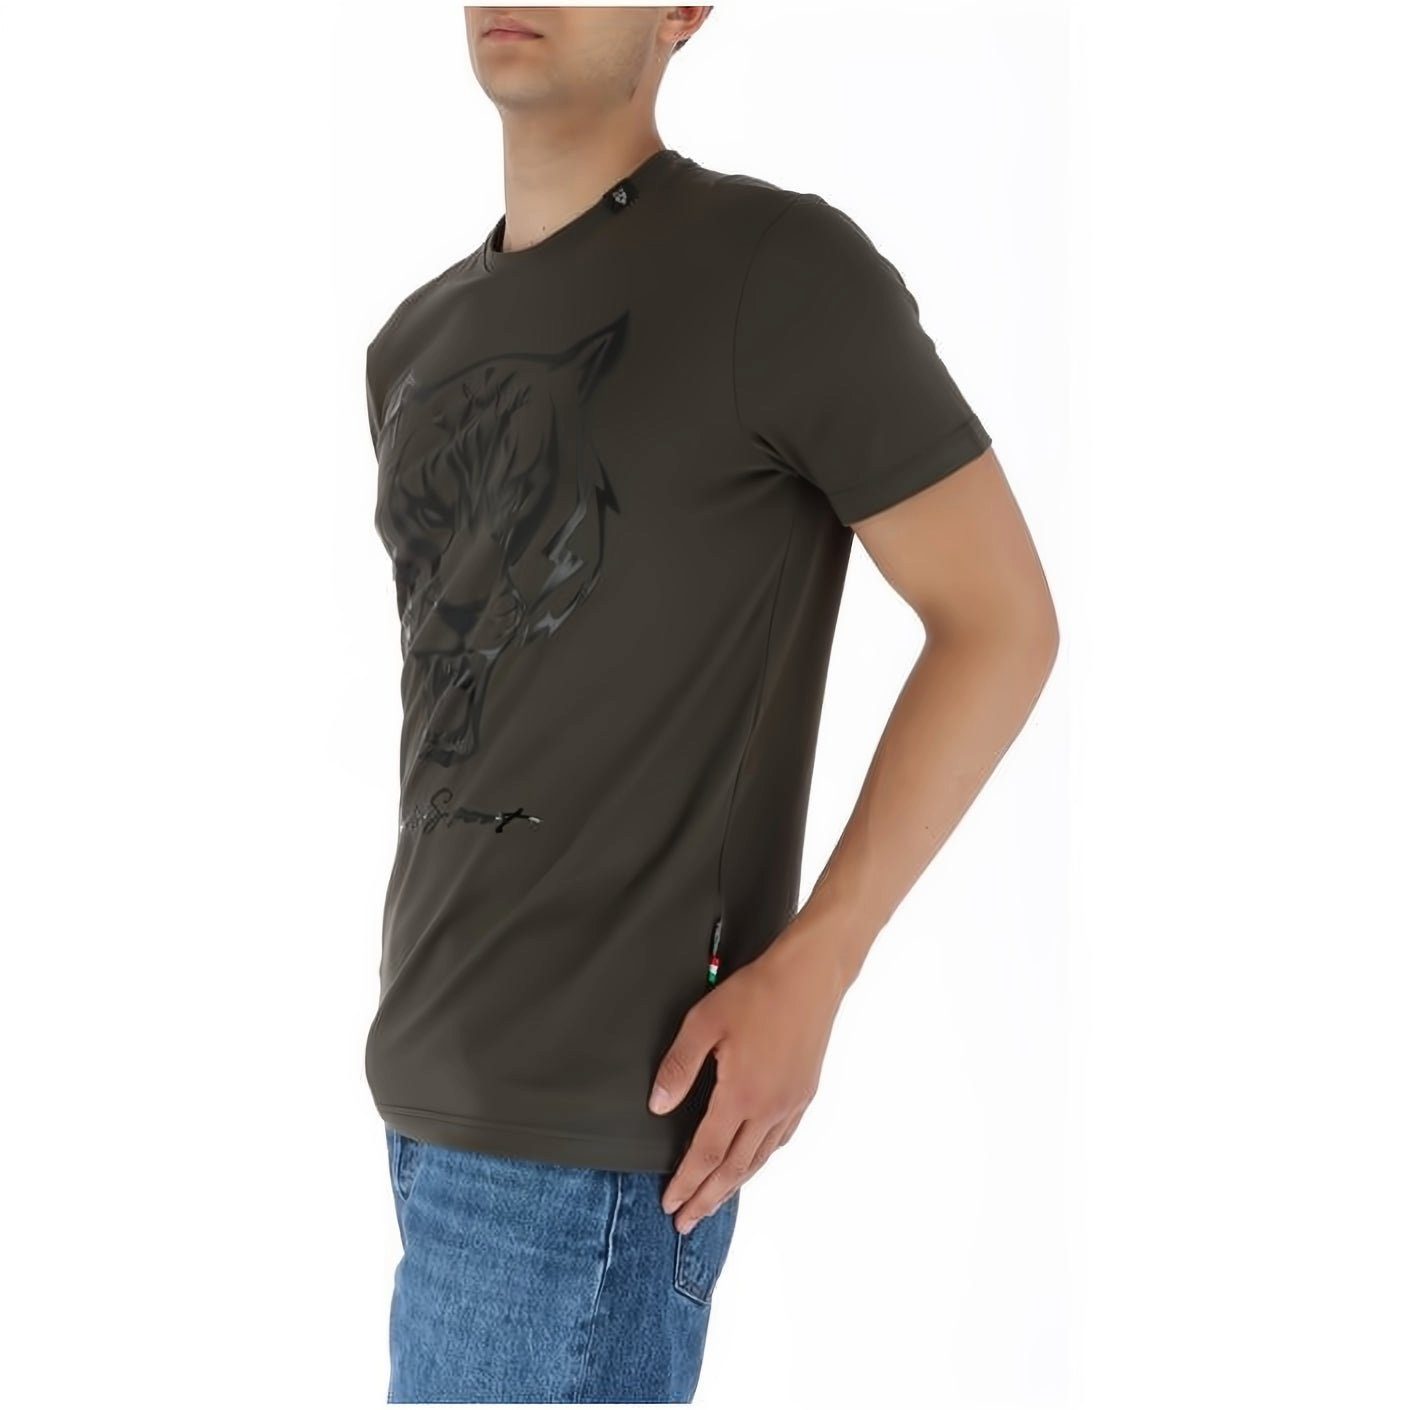 Look, Stylischer SPORT T-Shirt vielfältige Tragekomfort, NECK ROUND hoher PLEIN Farbauswahl